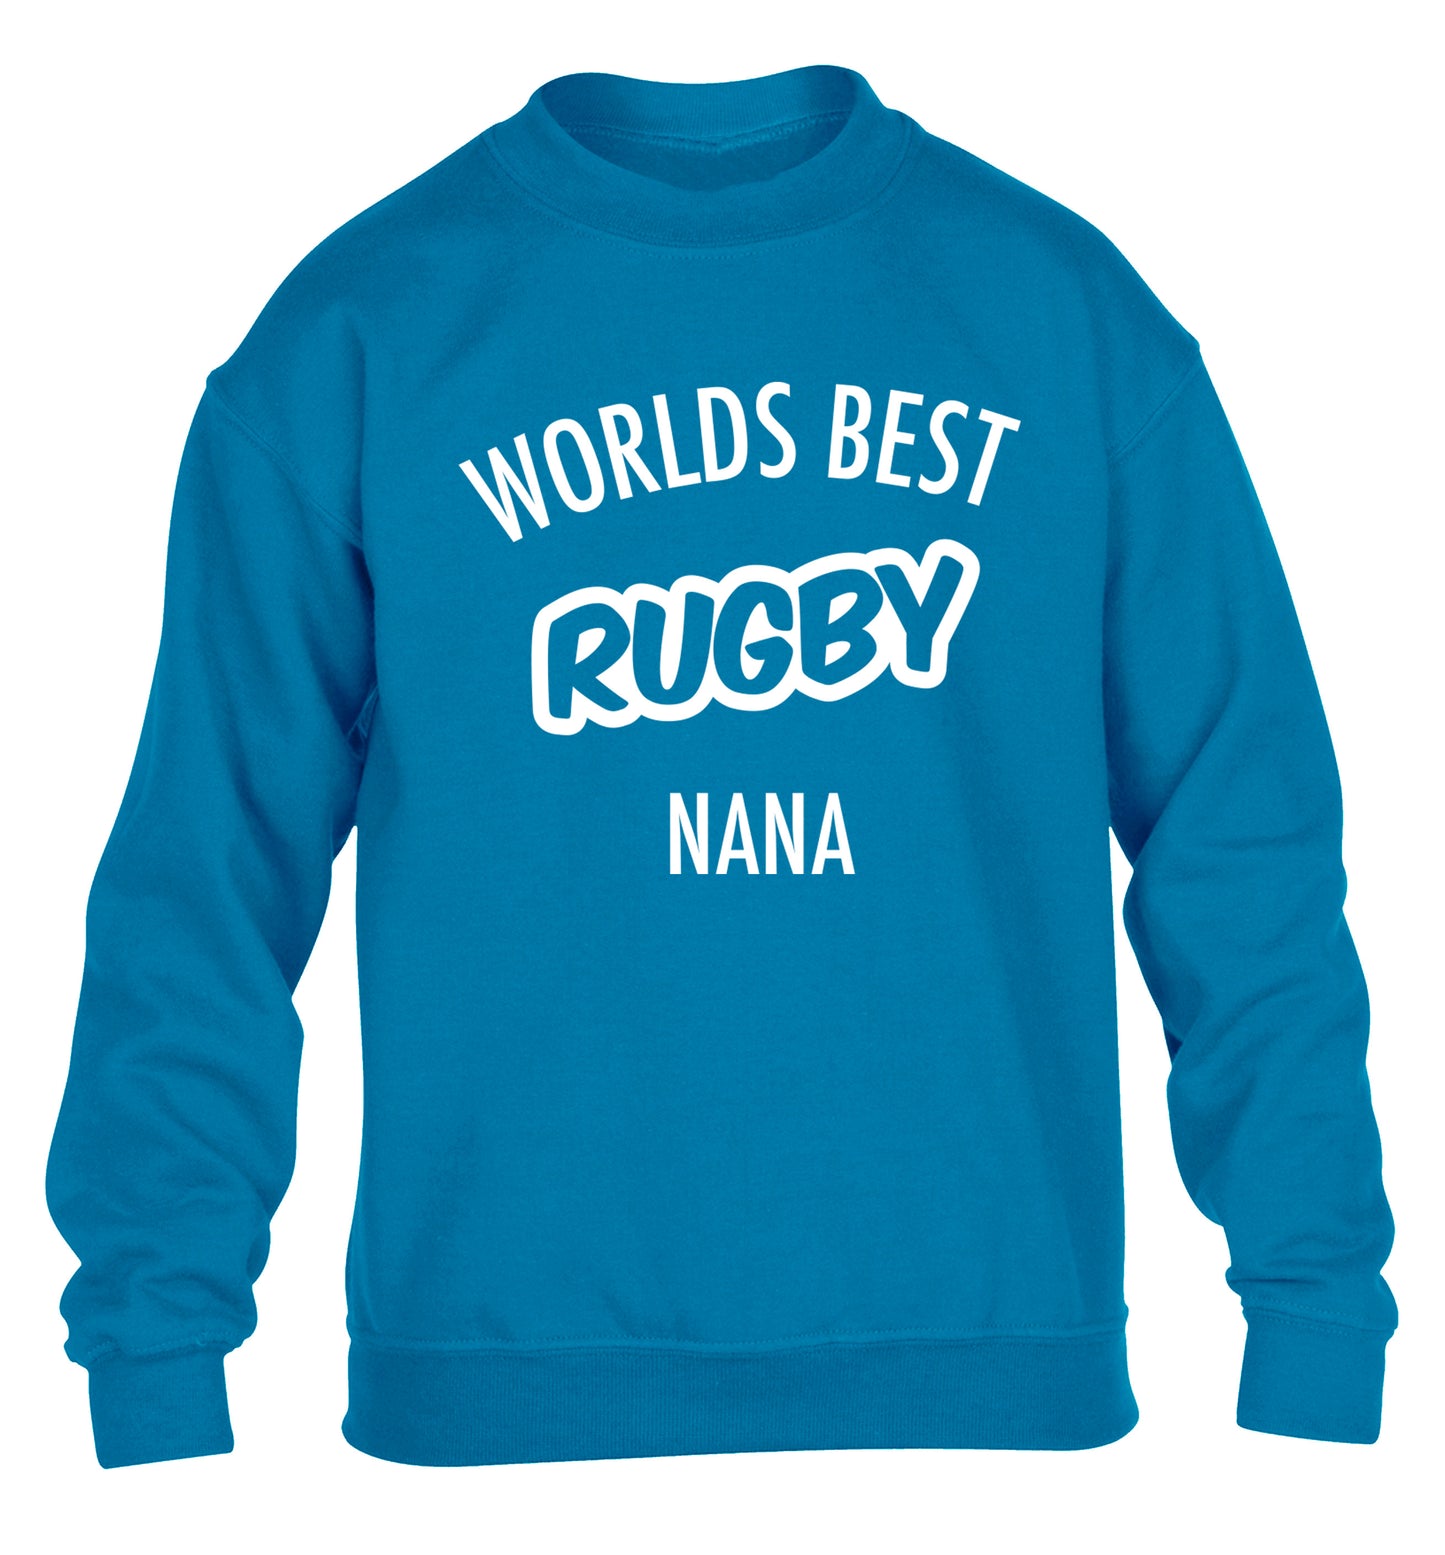 Worlds Best Rugby Grandma children's blue sweater 12-13 Years